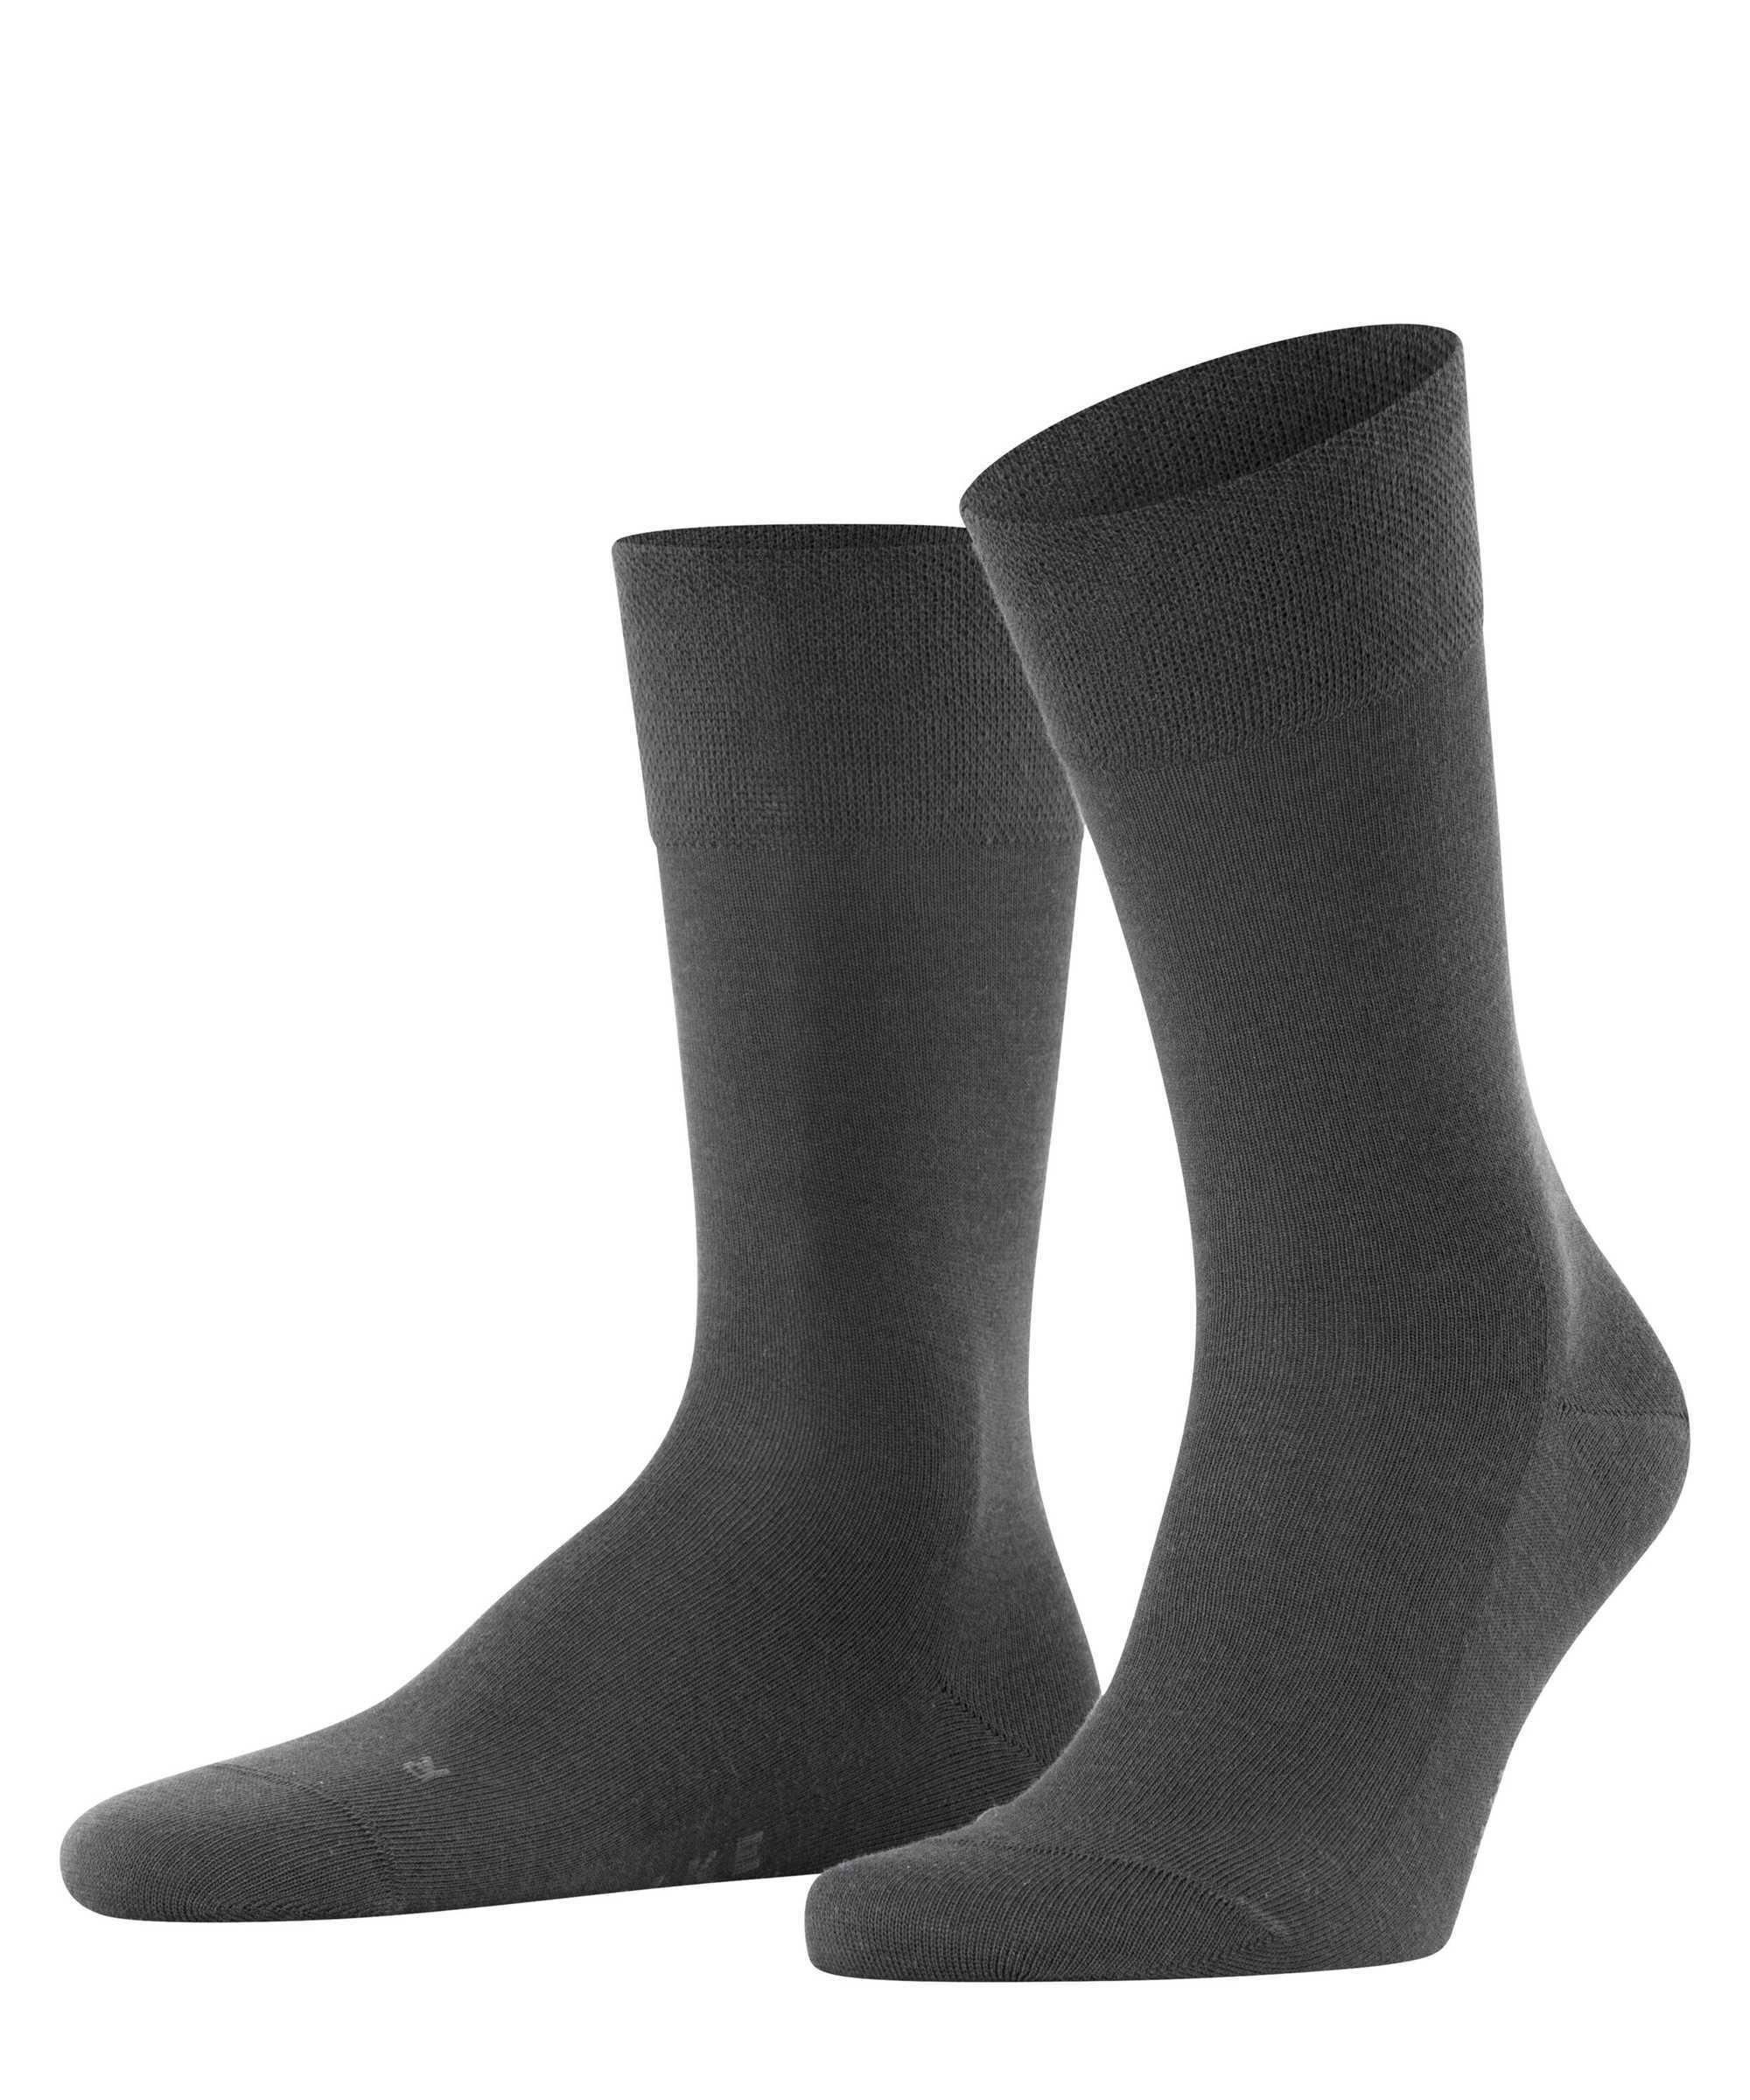 Falke Herren Socken Hersteller: Falke Bestellnummer:4031309875606